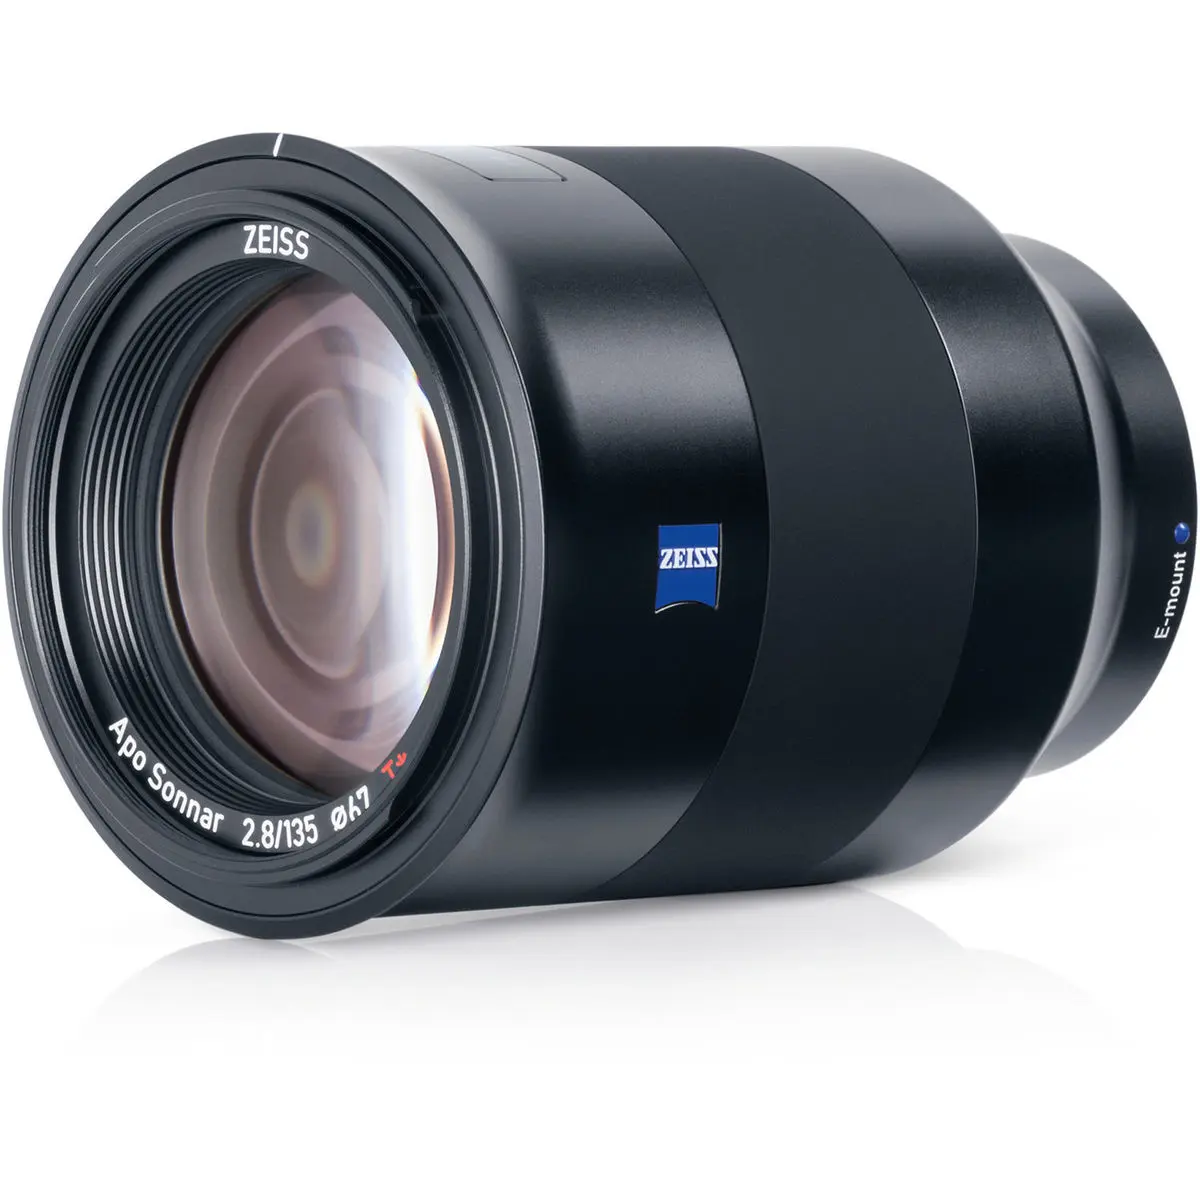 2. Carl Zeiss Batis 135mm F2.8 for Sony E mount Lens